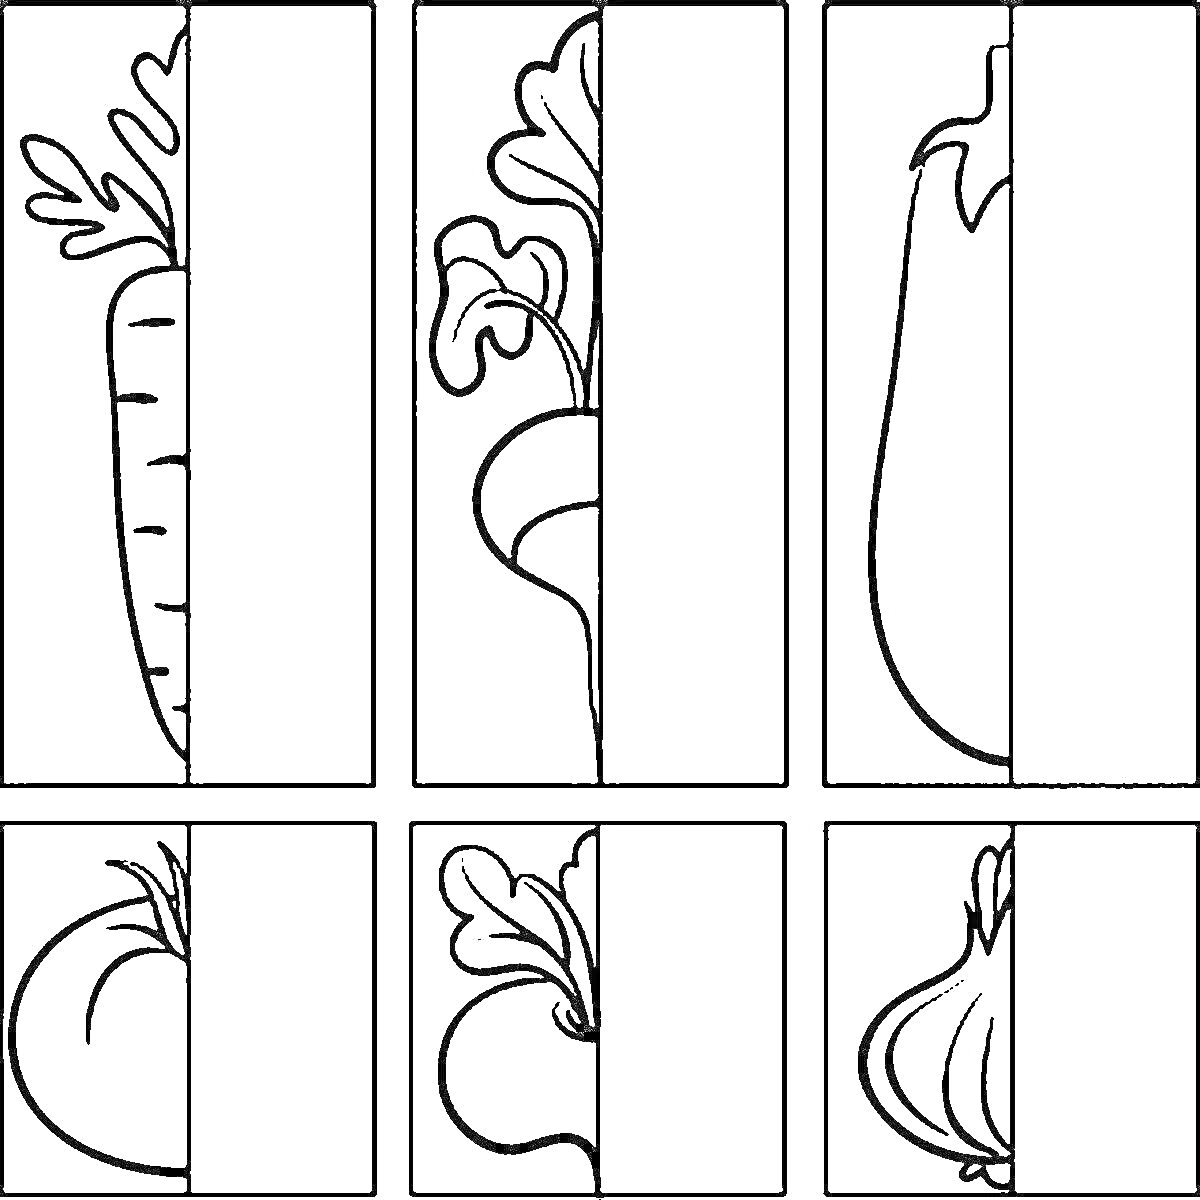 Раскраска Раскраска с изображениями овощей на половинках карточек (морковь, свекла, баклажан, помидор, репа, чеснок)